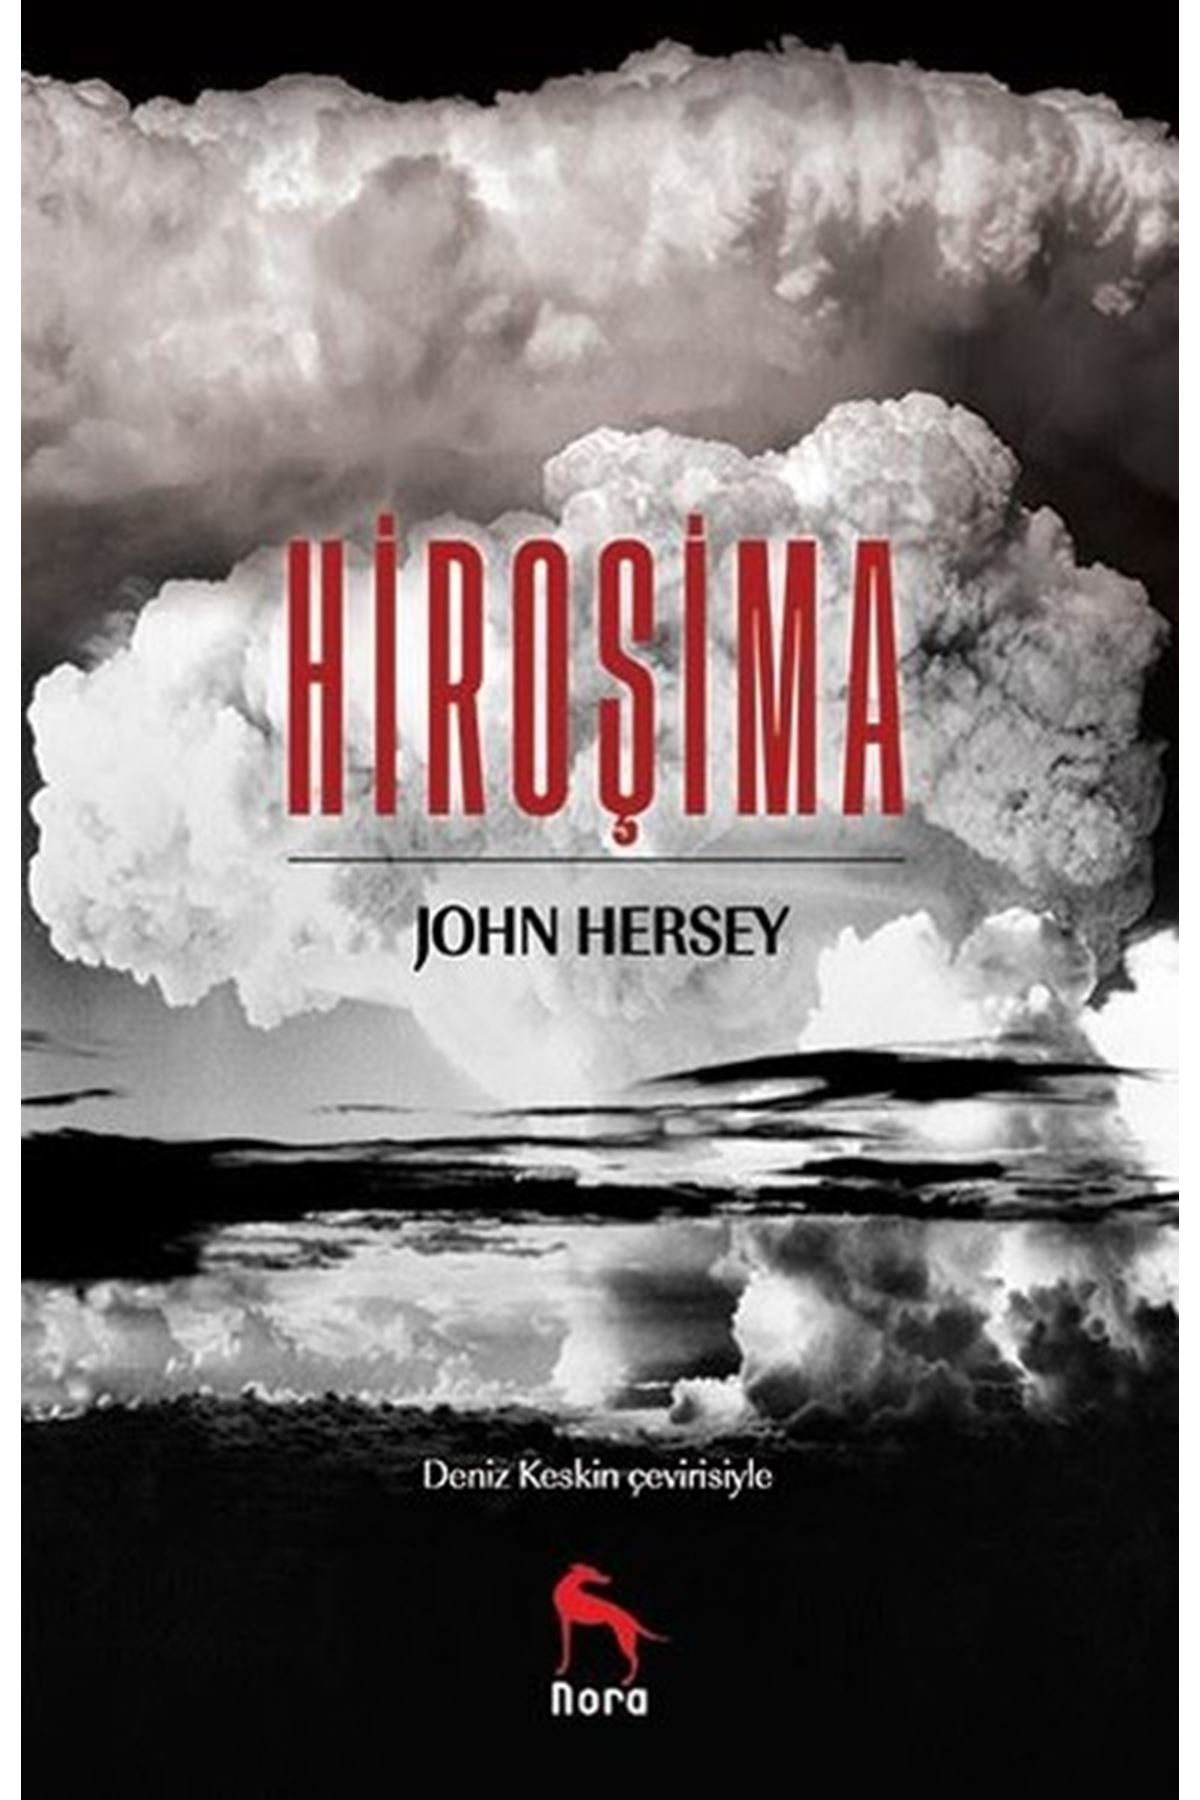 John Hersey - Hirosima